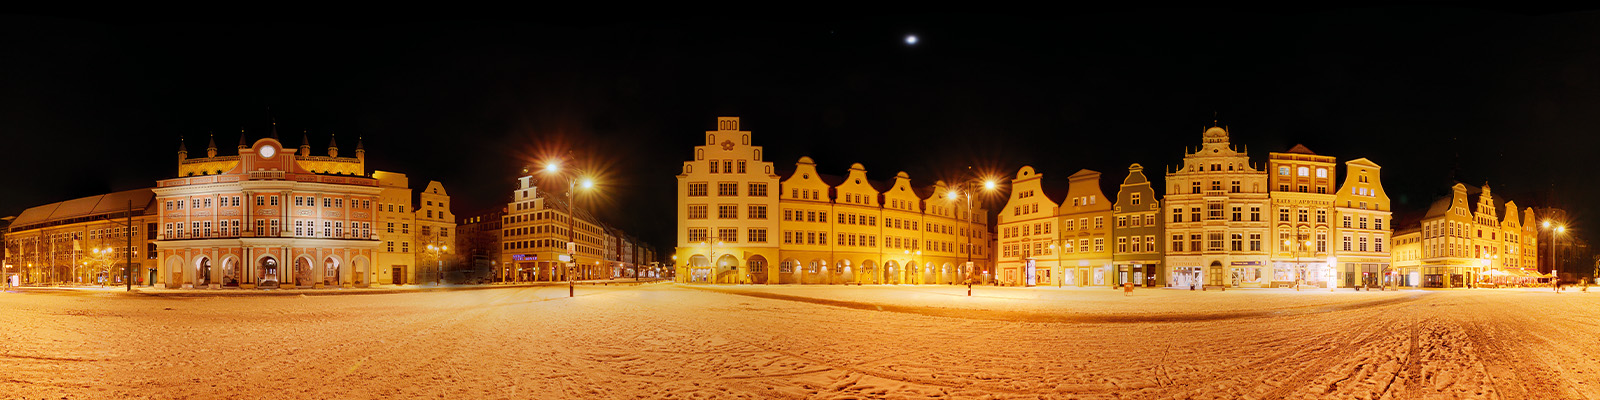 Motiv: Rostock Markt bei Nacht